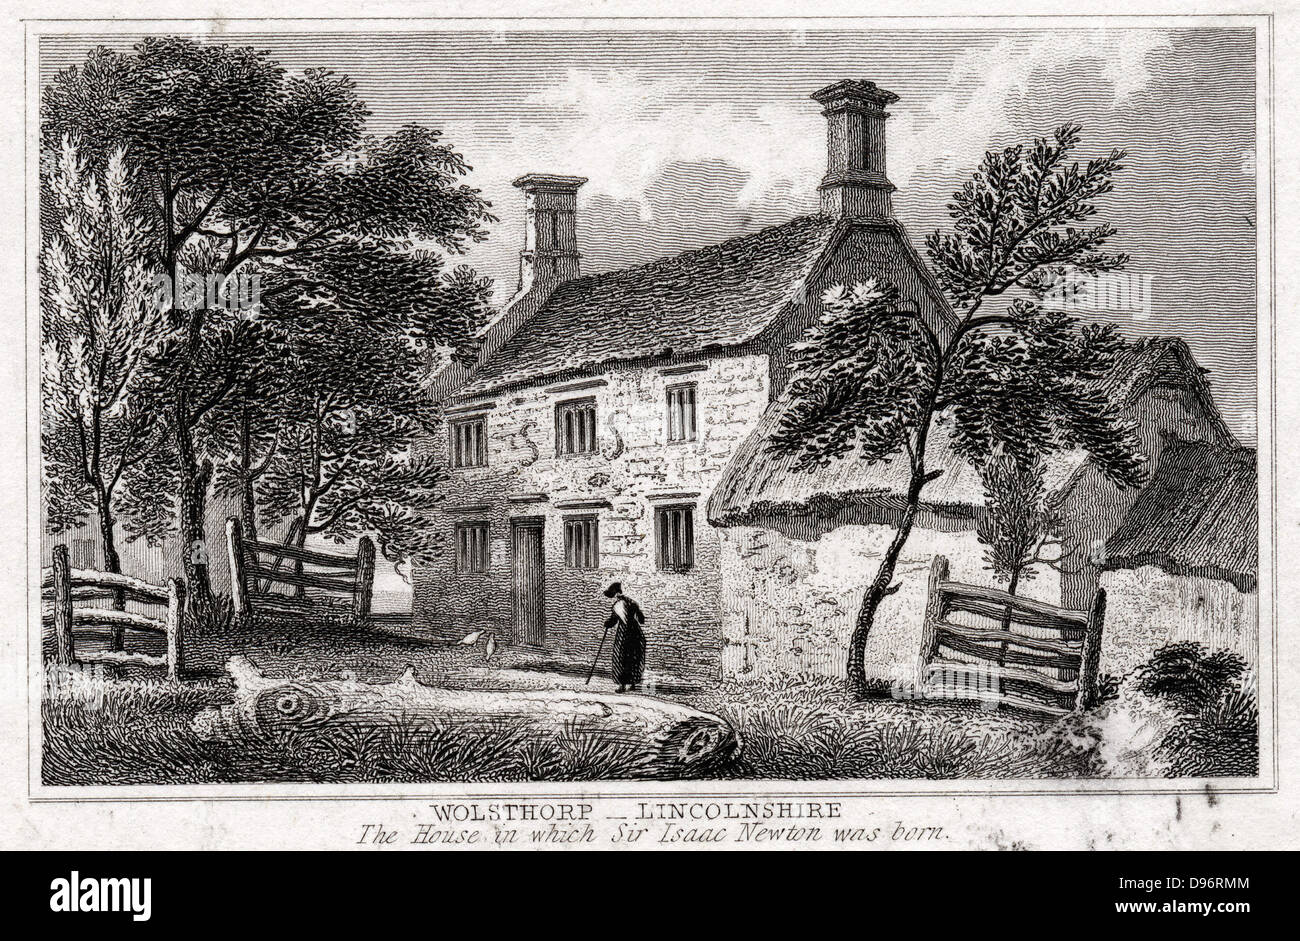 Woolsthorpe Manor, in der Nähe von Grantham, Lincolnshire, England, Geburtsort von Isaac Newton (1642-1727). Aus dem frühen 19. Jahrhundert Kupferstich. Stockfoto